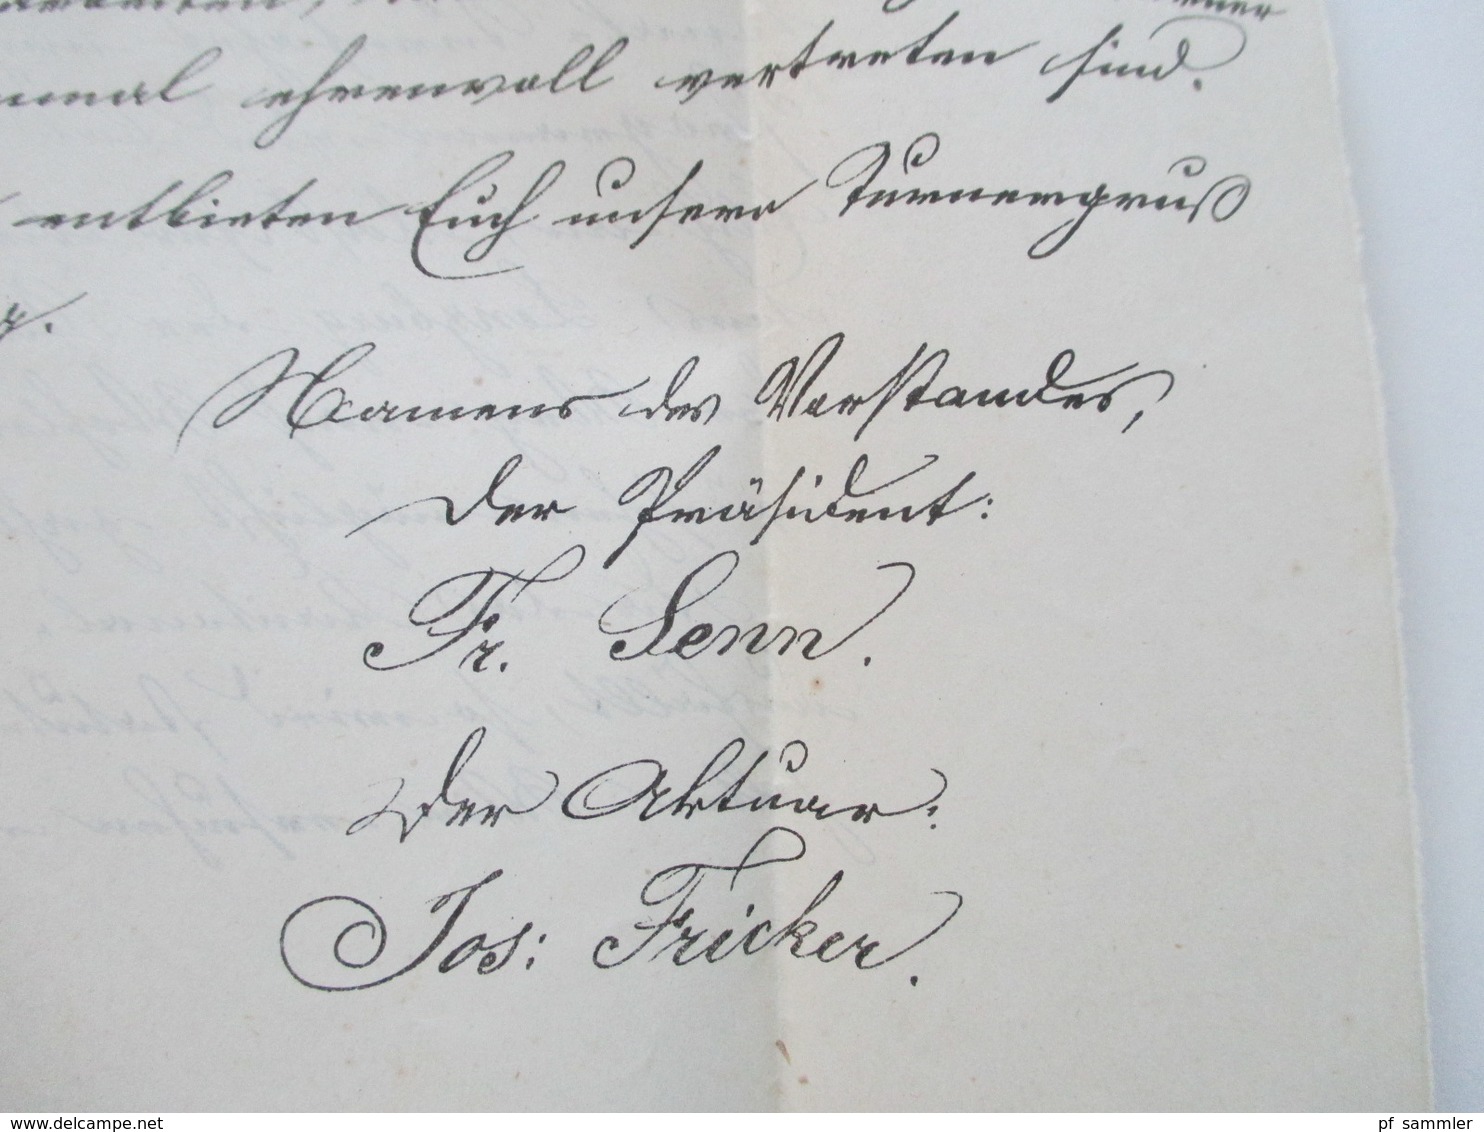 Schweiz 1874 Dokument / gedruckter Brief Zofingen der Vorstand des Aarg. Kantonal Turnvereins